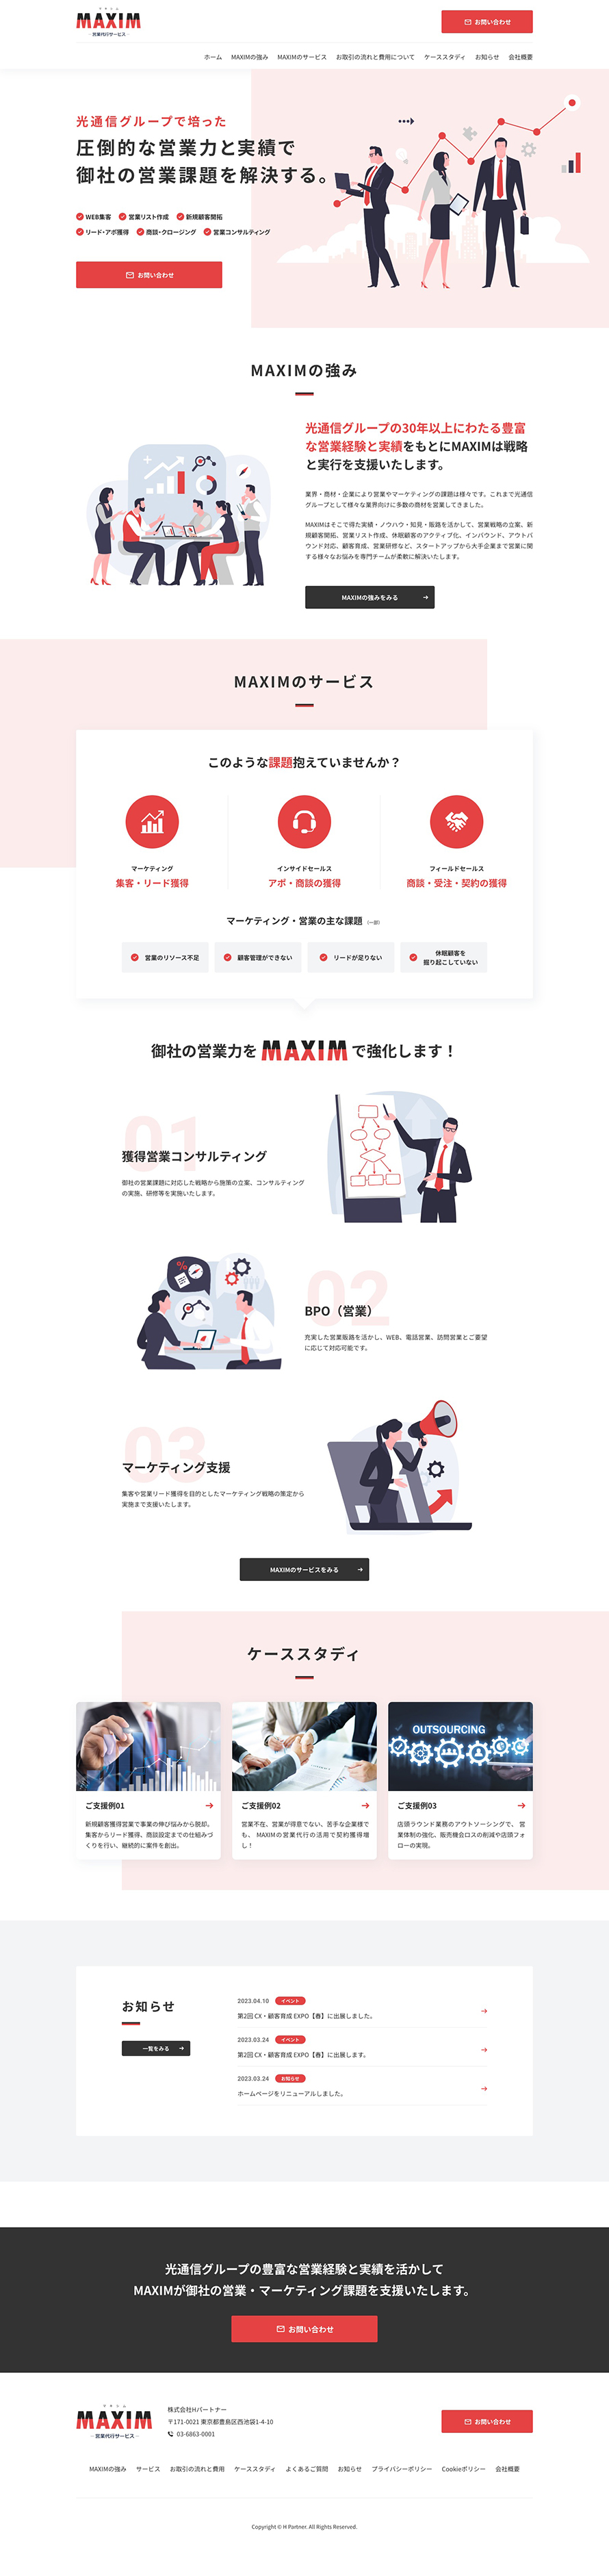 株式会社Hパートナー MAXIM サービスサイト